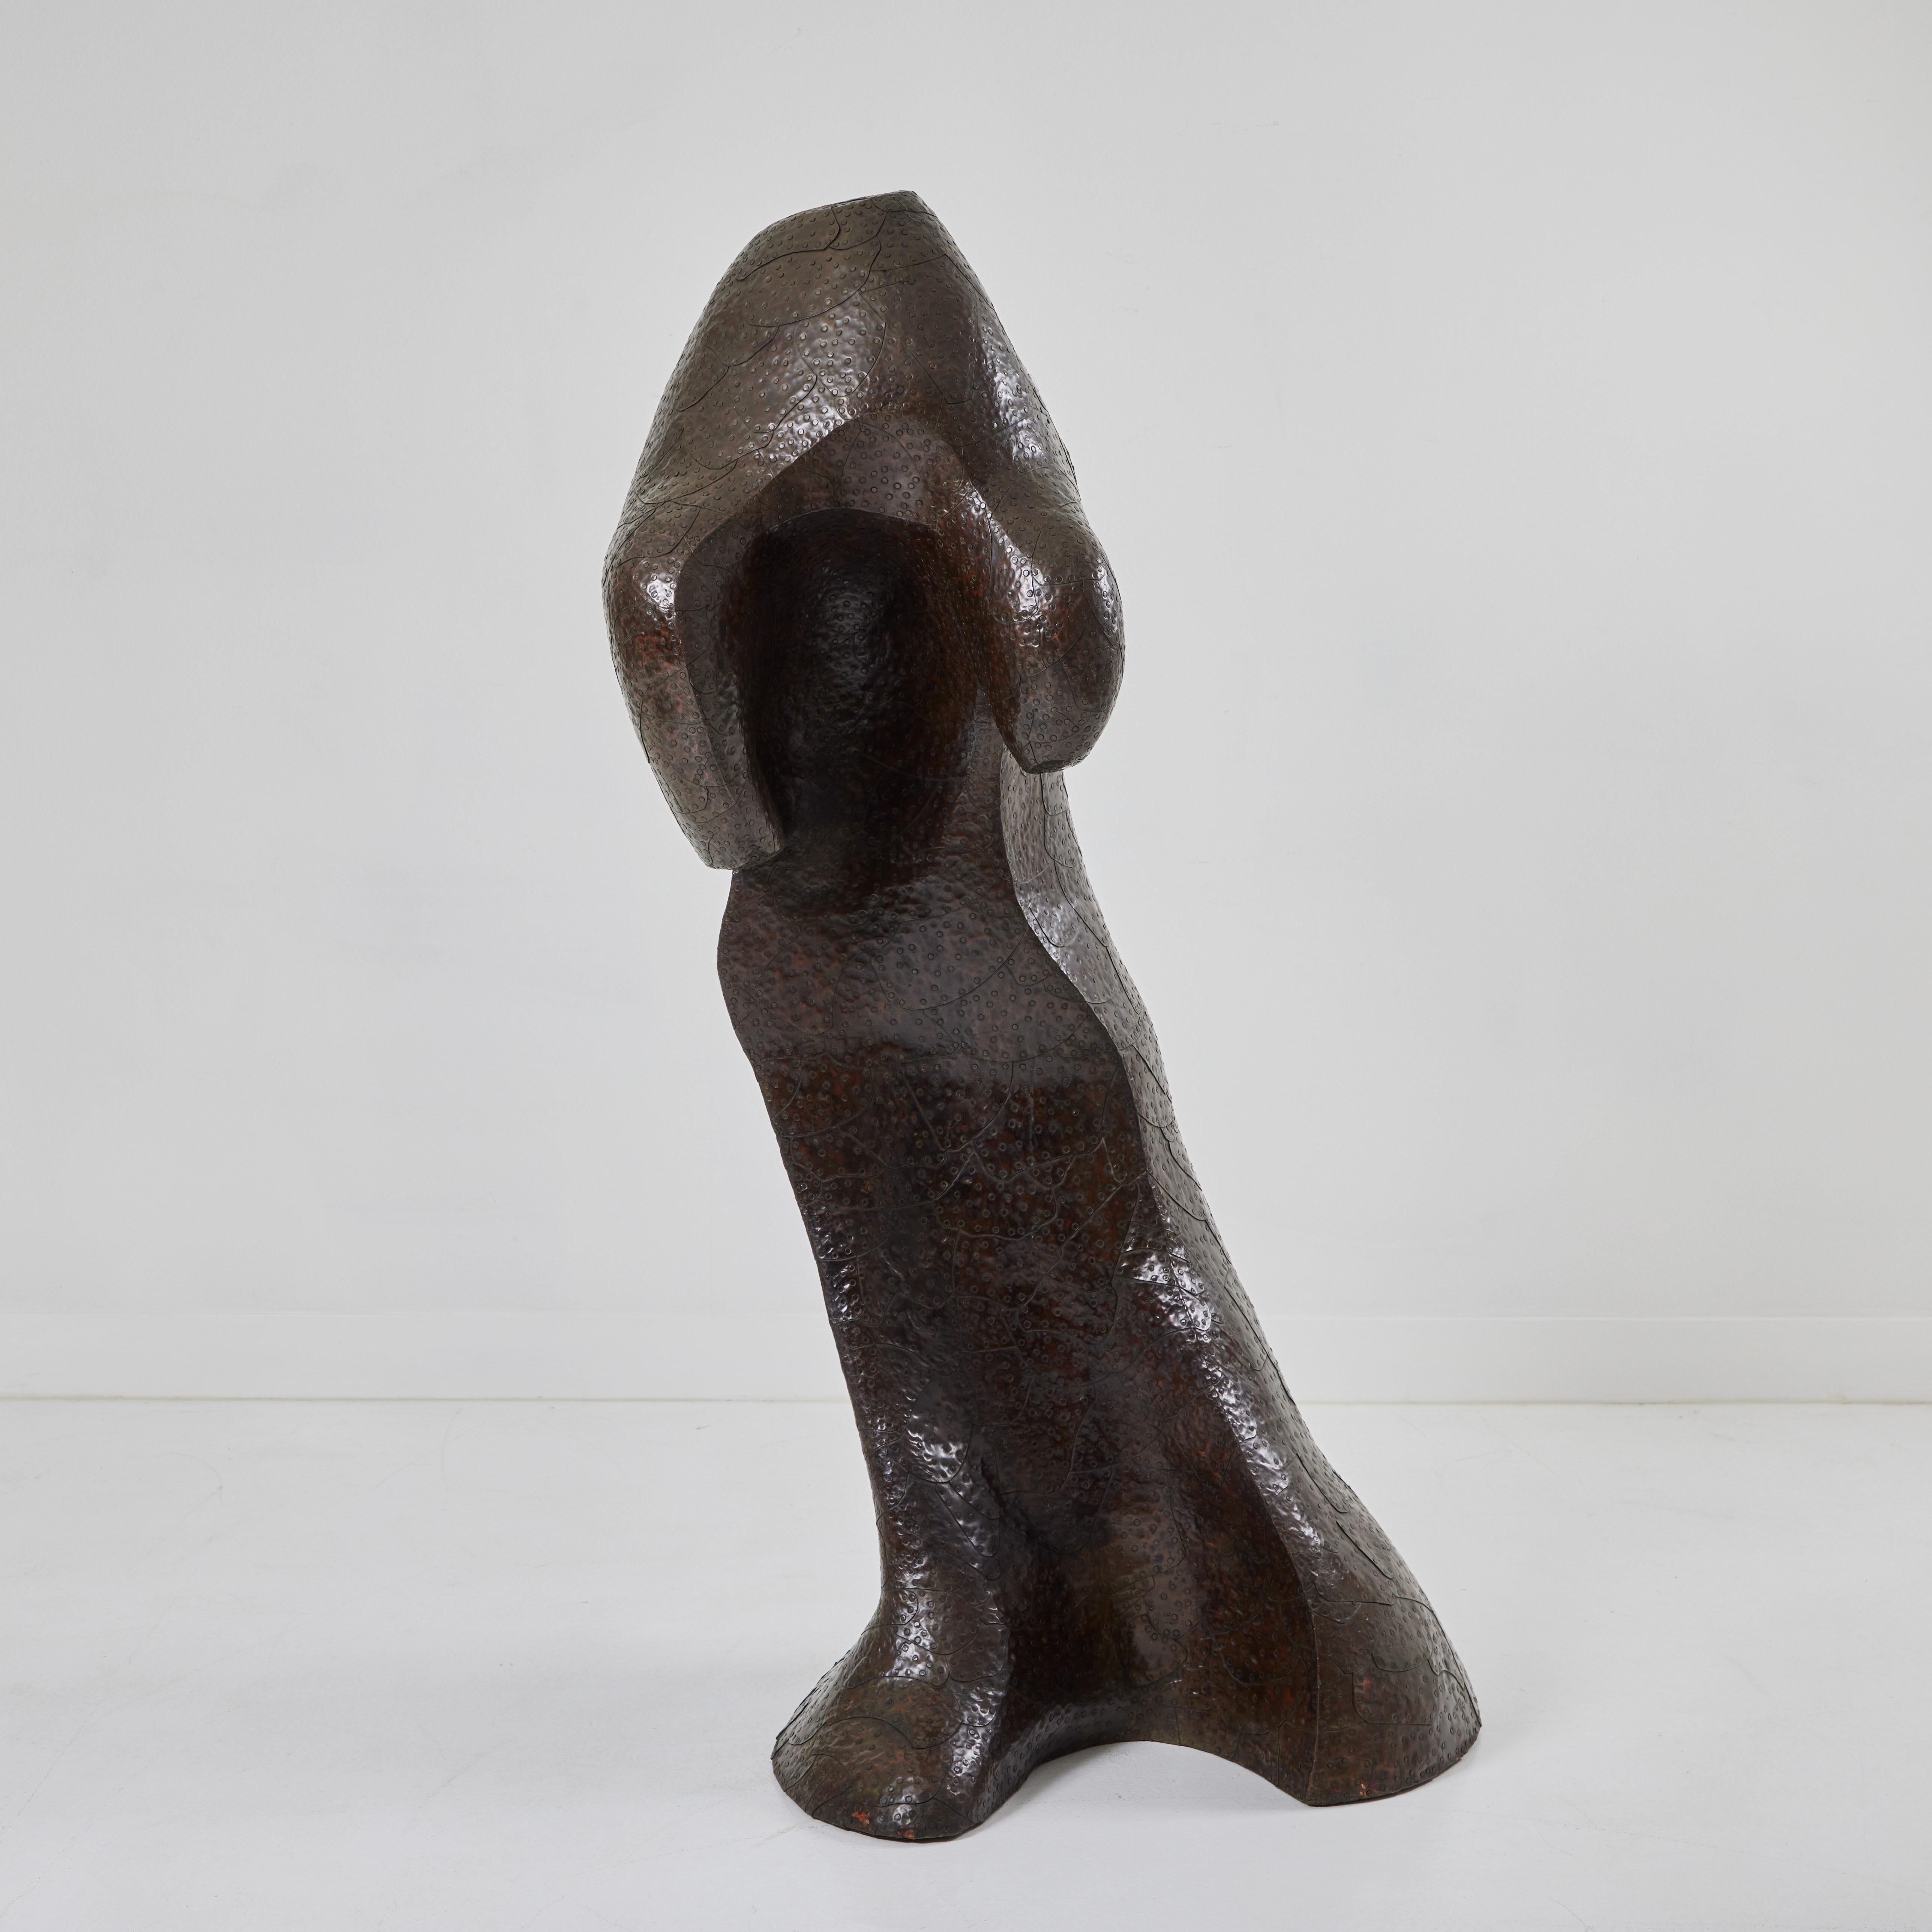 Cette forme biomorphique unique de Bill Anson, qui fait partie de sa collection Copper Clad Cedar, est un merveilleux exemple de son travail multimédia utilisant le cèdre et le cuivre. La sculpture est faite d'un grand morceau de cèdre qui a été